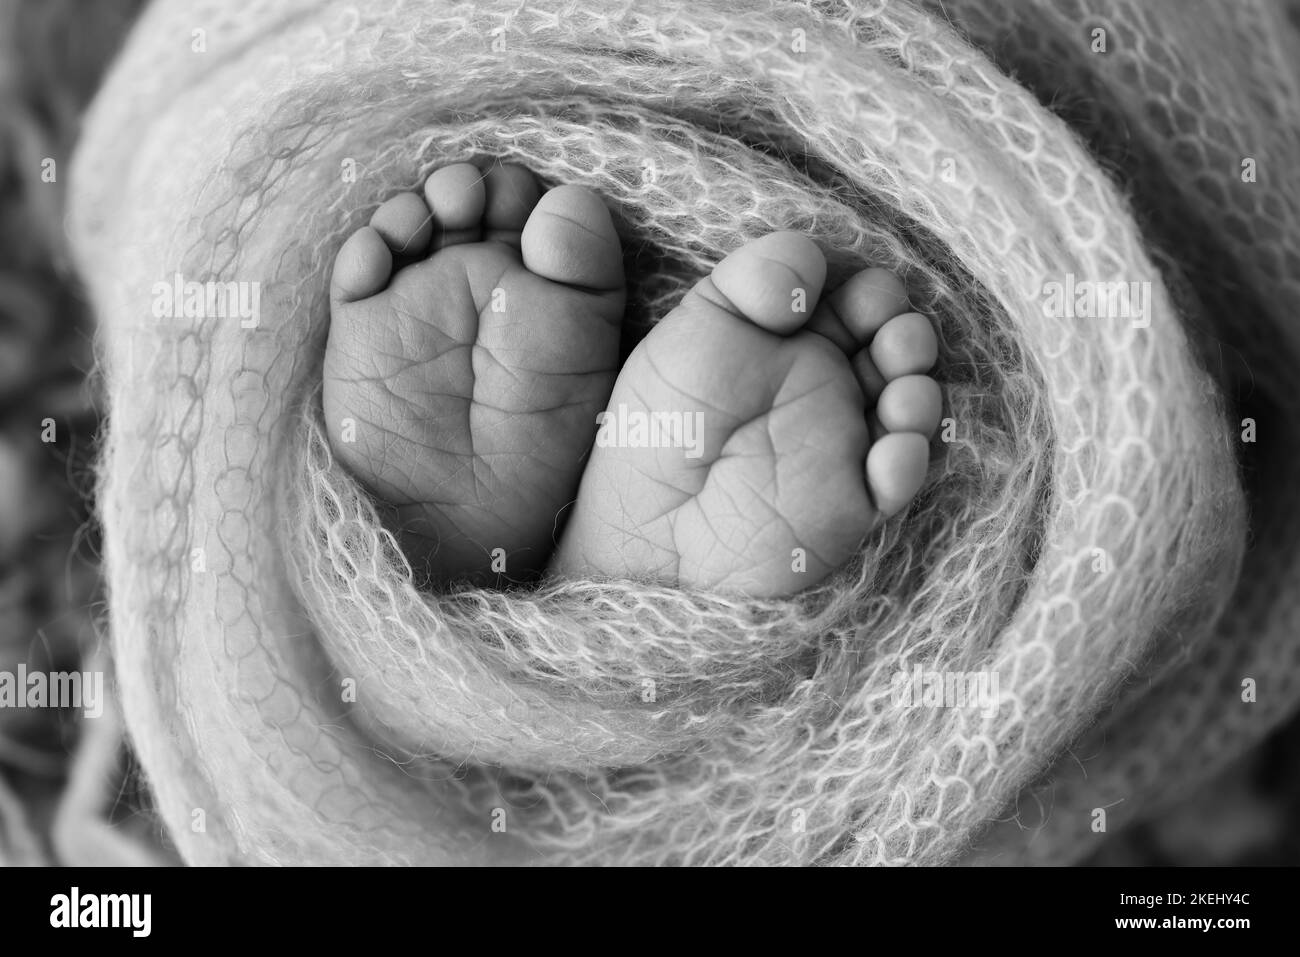 Nahaufnahme von Zehen, Fersen und Füßen eines Babys.der kleine Fuß eines Neugeborenen. Stockfoto